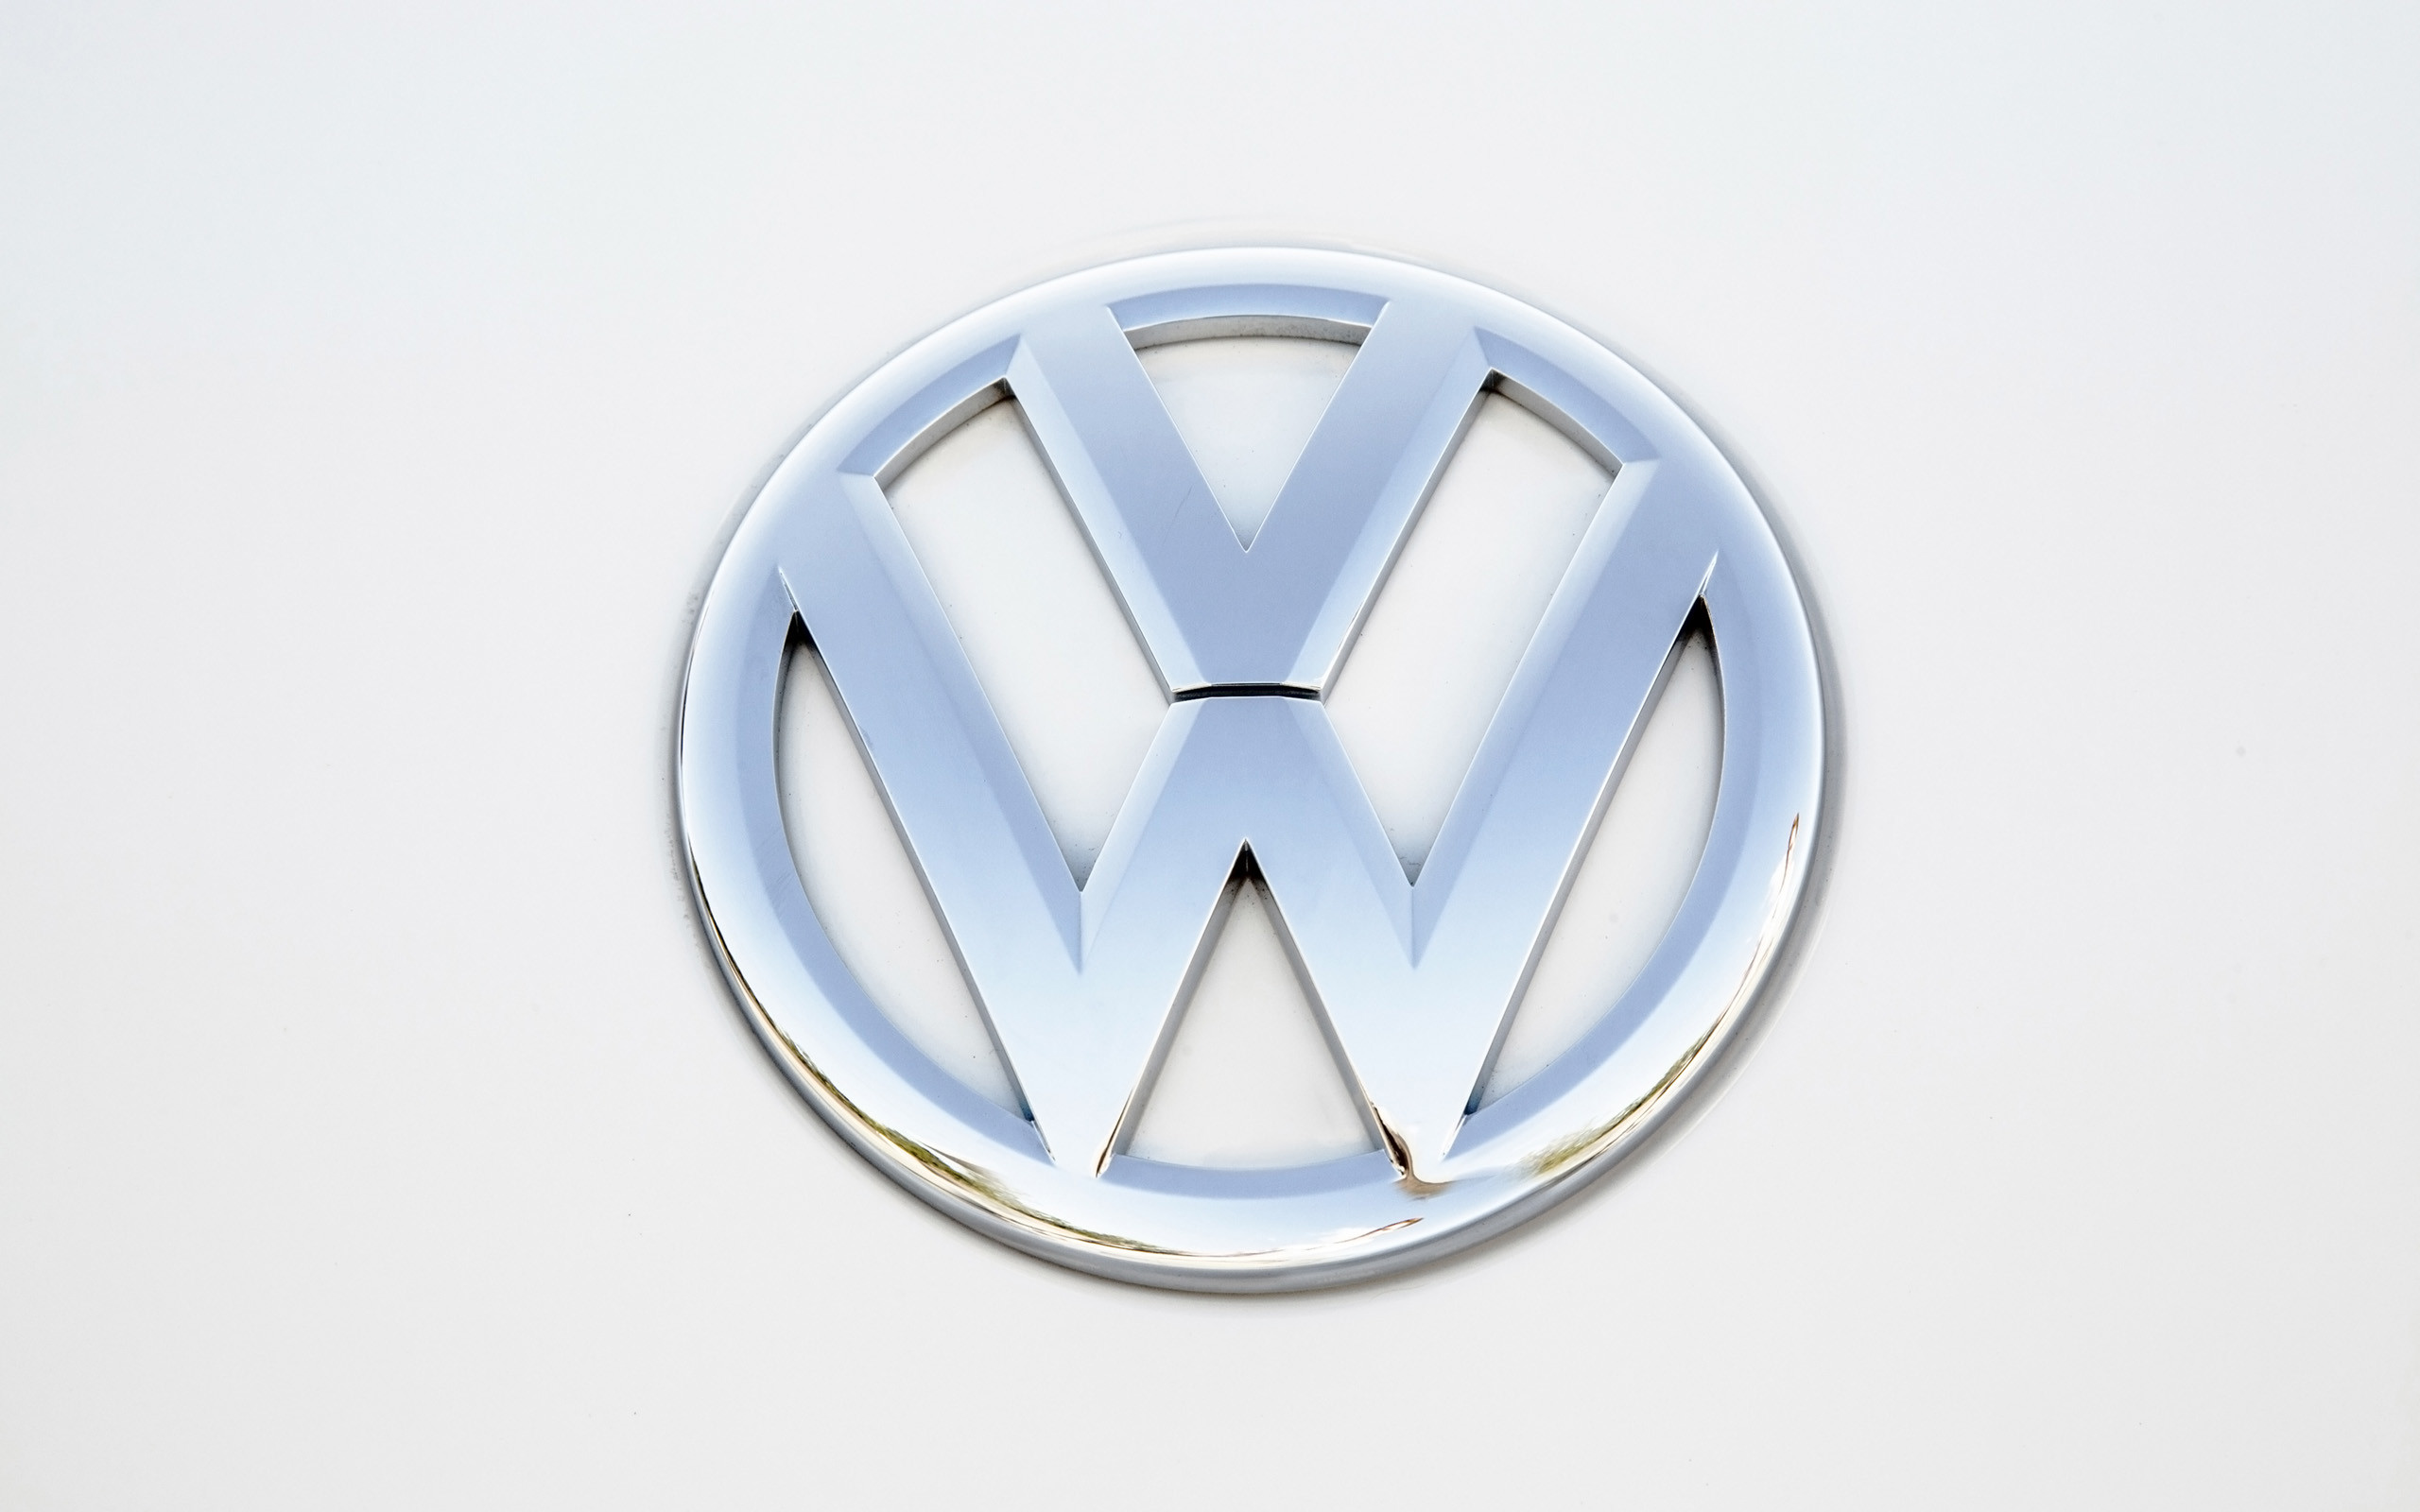 2560x1600 2014 Volkswagen Beetle Convertible logo poster wallpaper |  |  207151 | WallpaperUP